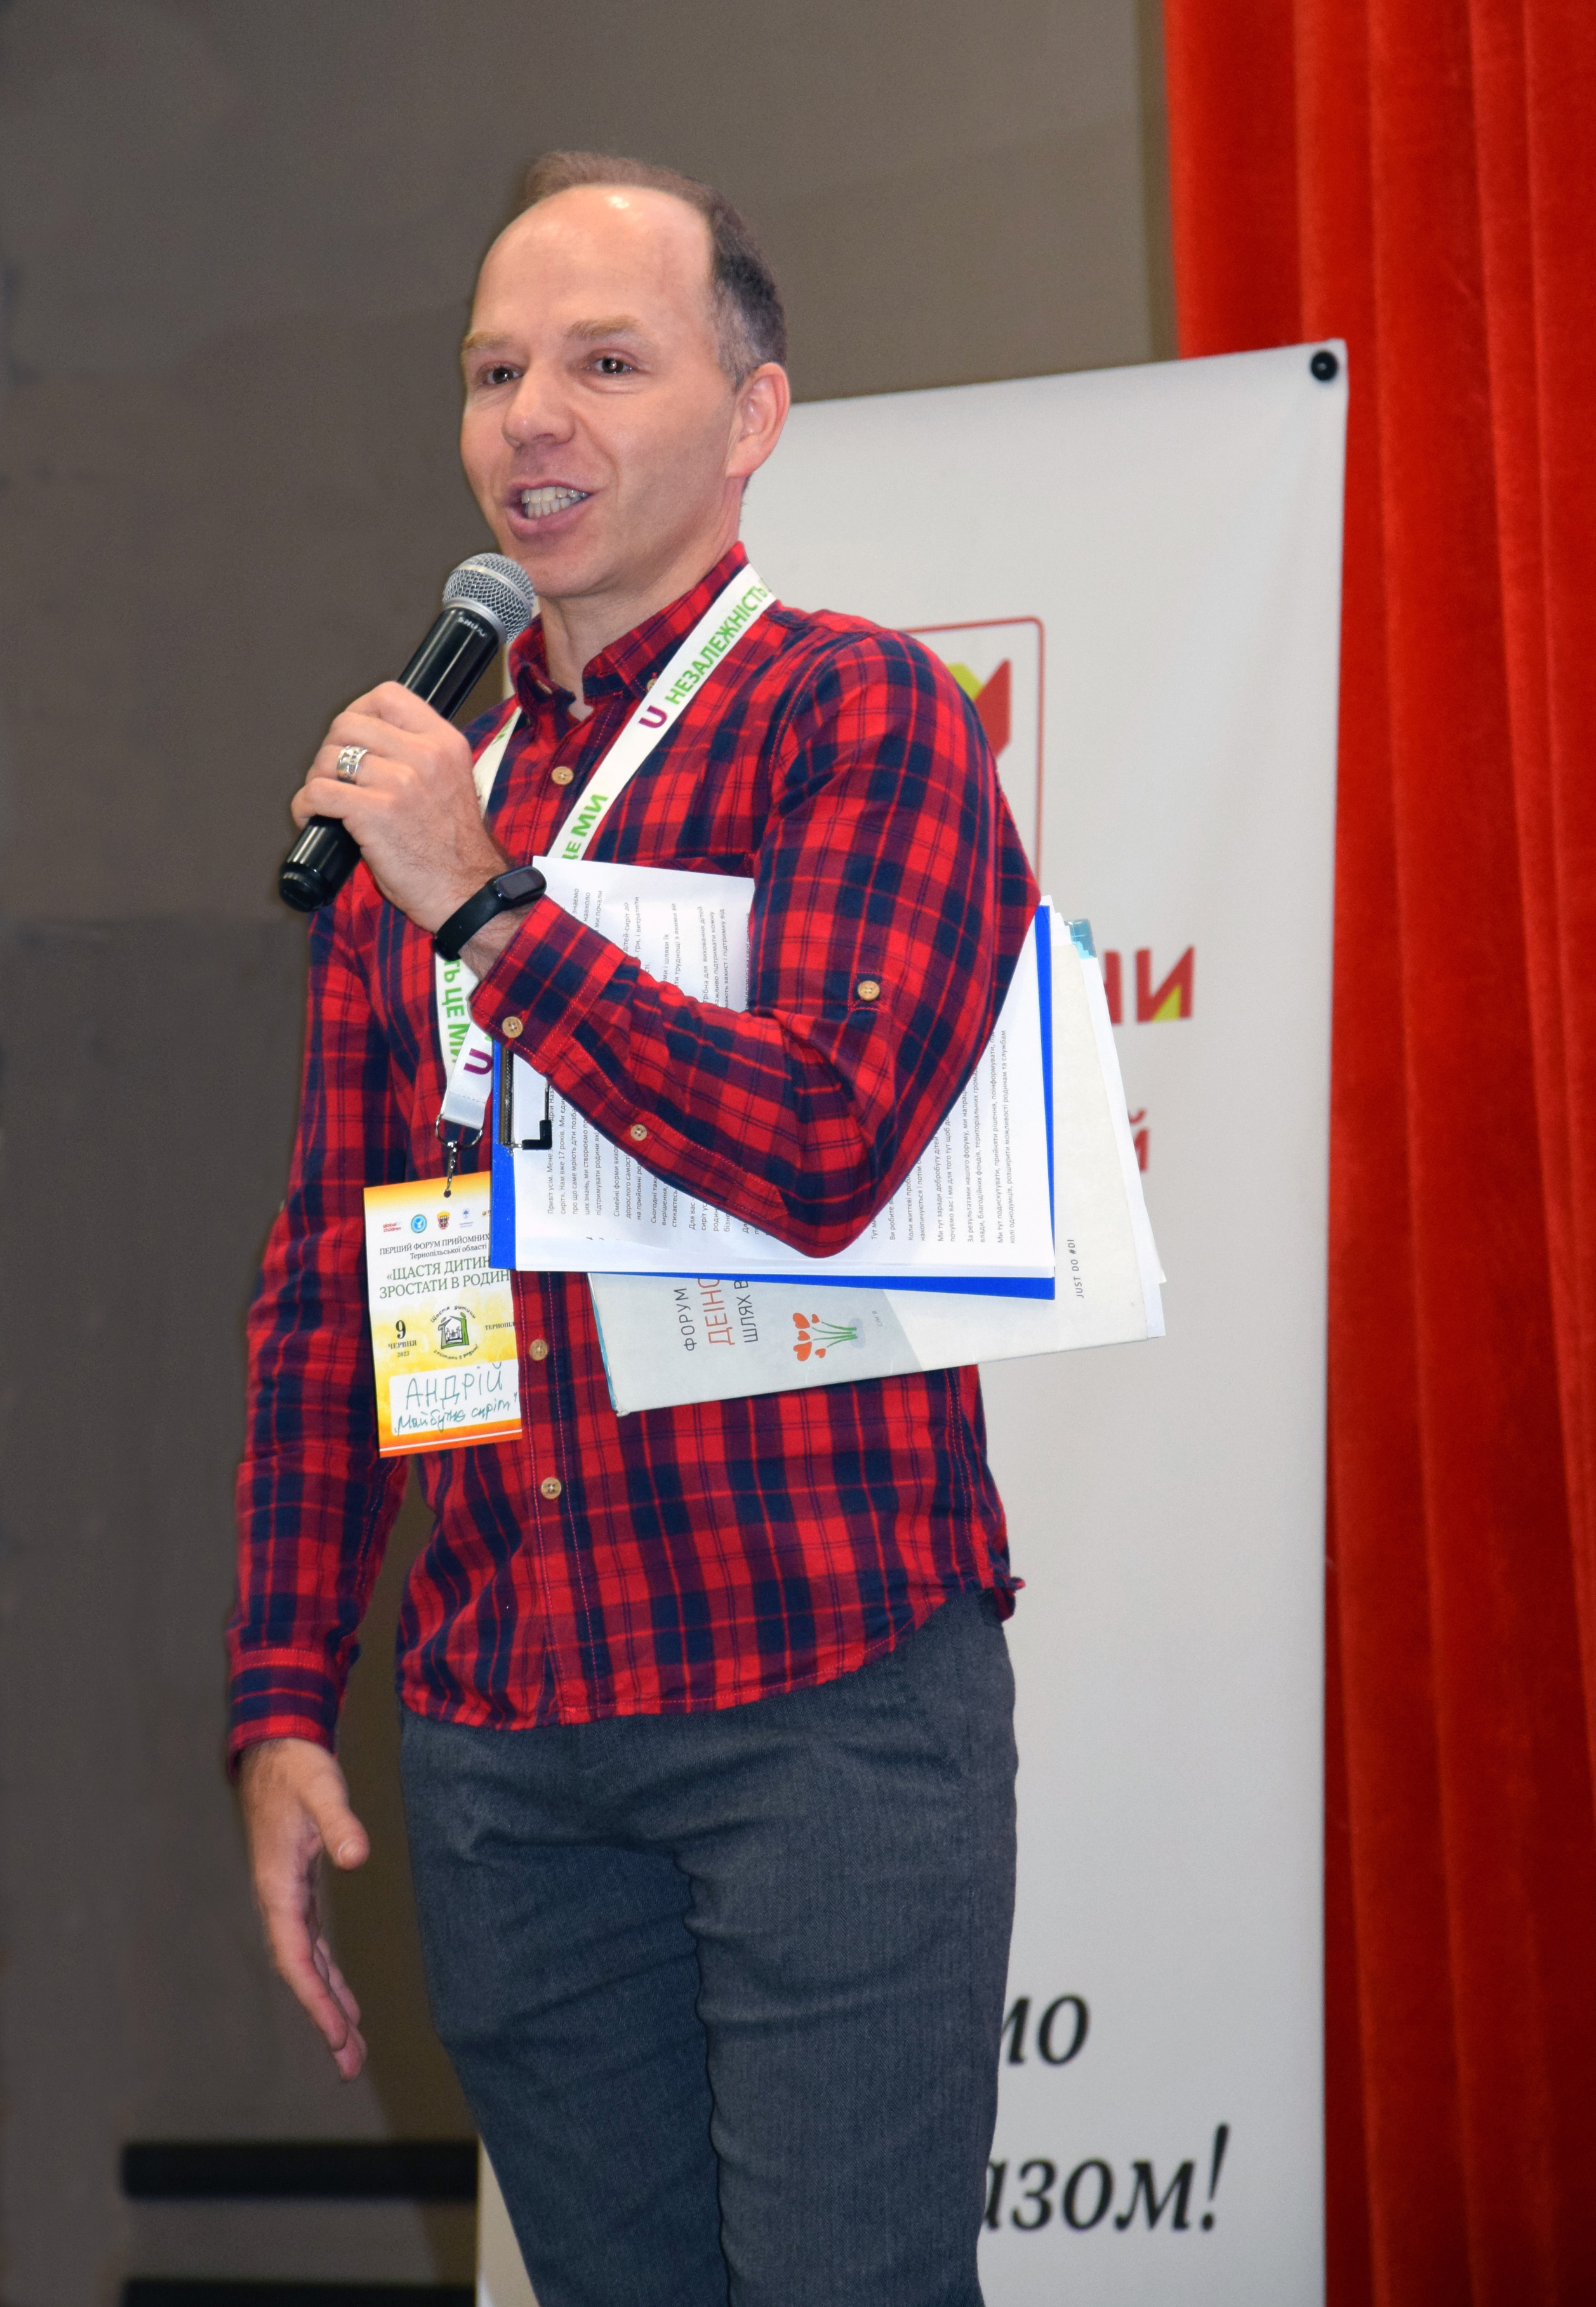 Голова обласного благодійного фонду «Майбутнє сиріт» Андрій Назаренко вітає учасників форуму та окреслює питання, які винесли на обговорення